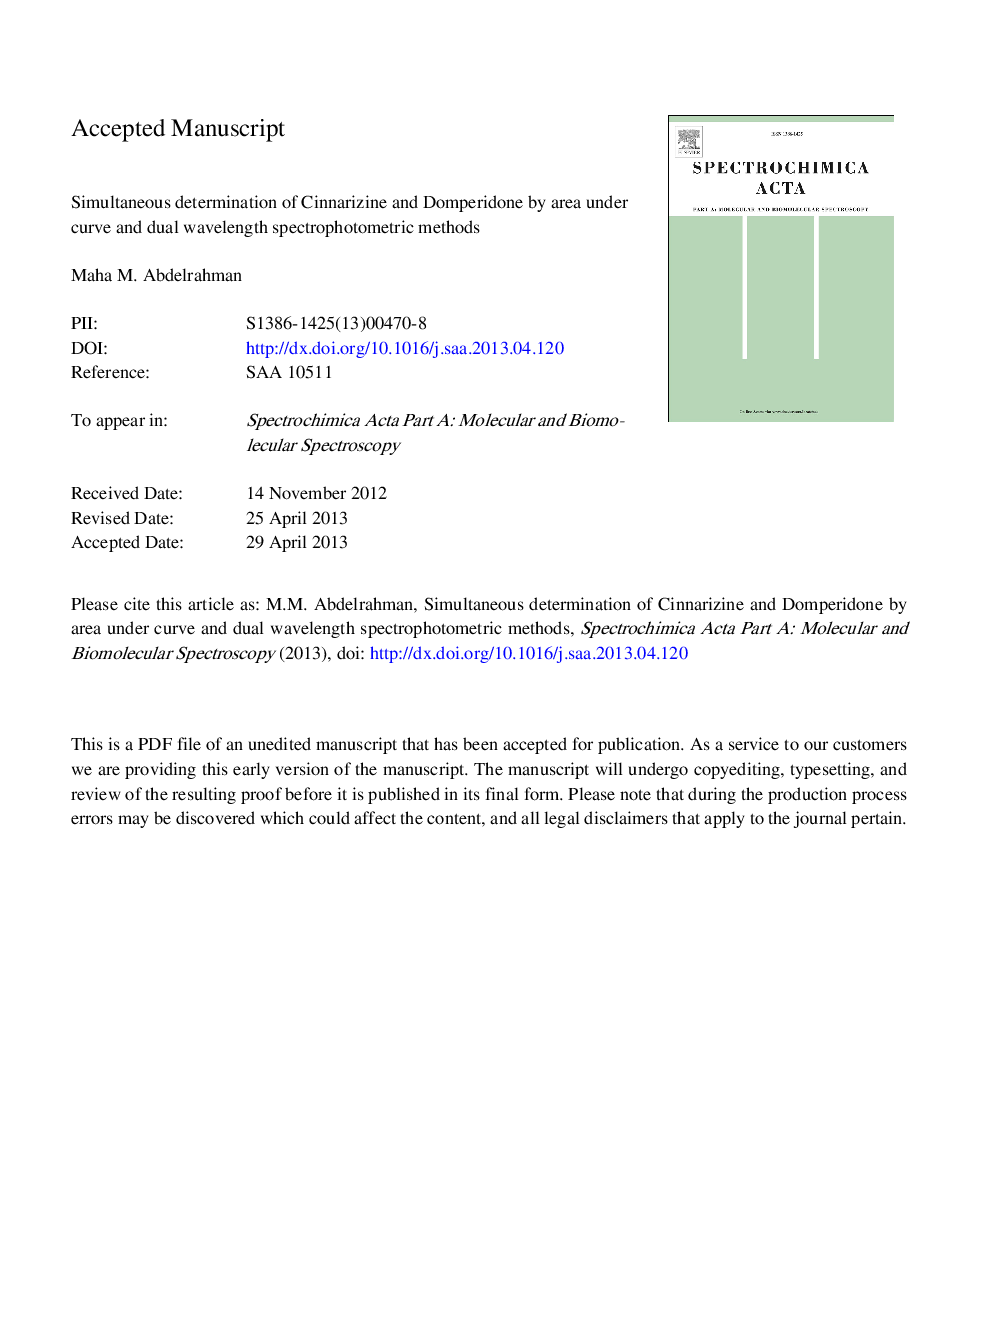 تعیین همزمان سیناریسین و دامپریدون با استفاده از روش های اسپکتروفتومتری طول موج و منحنی 